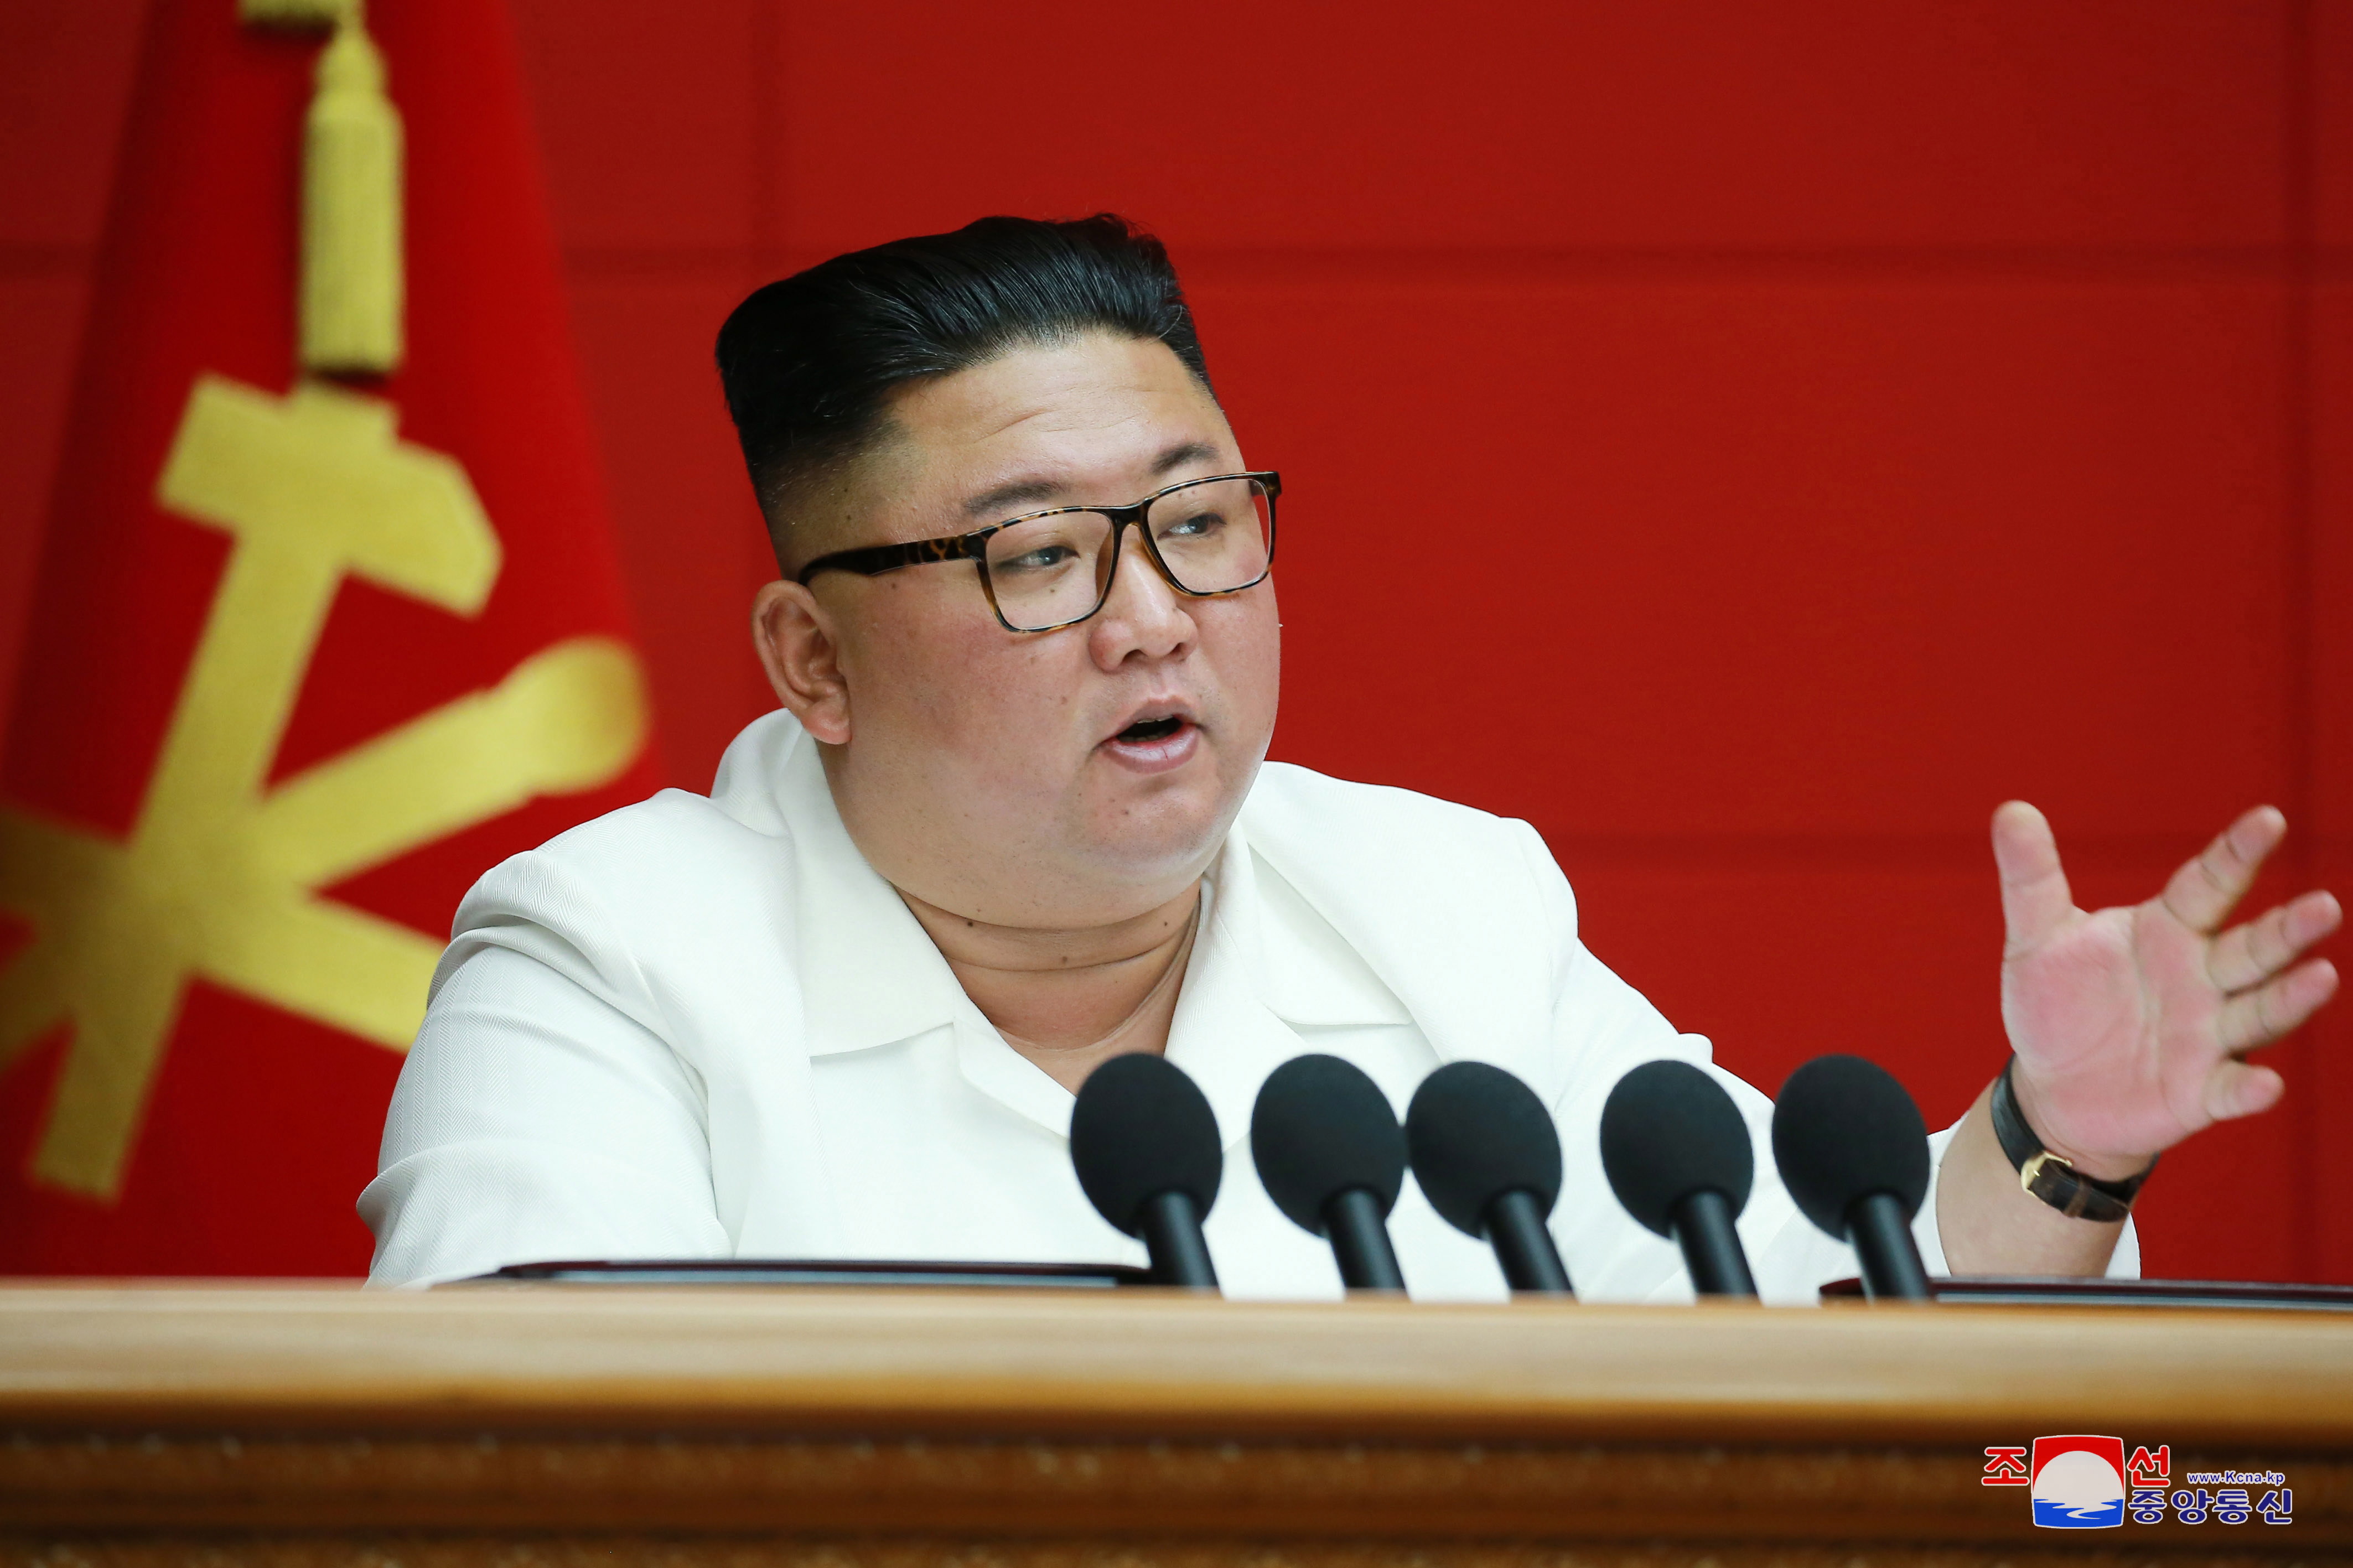 Misterul din jurul ultimei fotografii în care Kim Jong Un apare în viață și sănătos